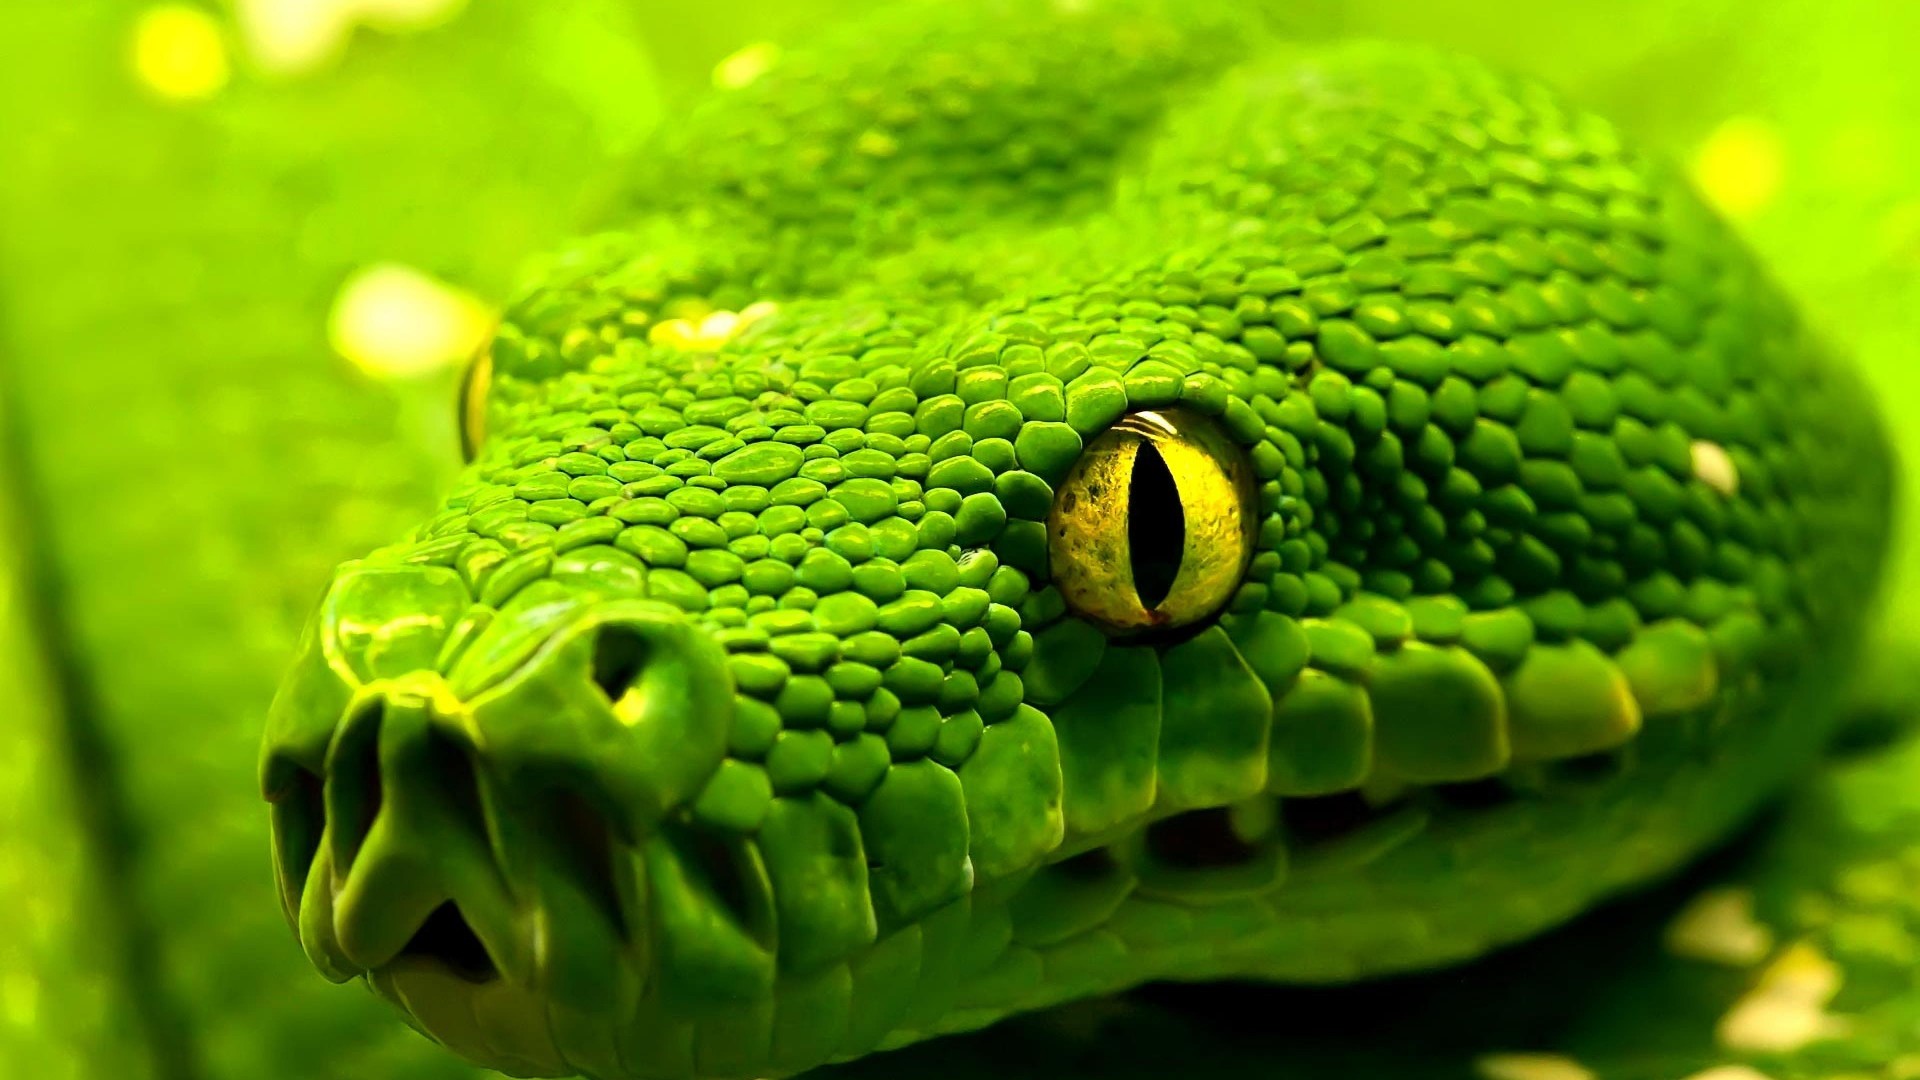 Змея, зеленая, глаза, рептилия, Snake, green, reptile, eyes (horizontal)